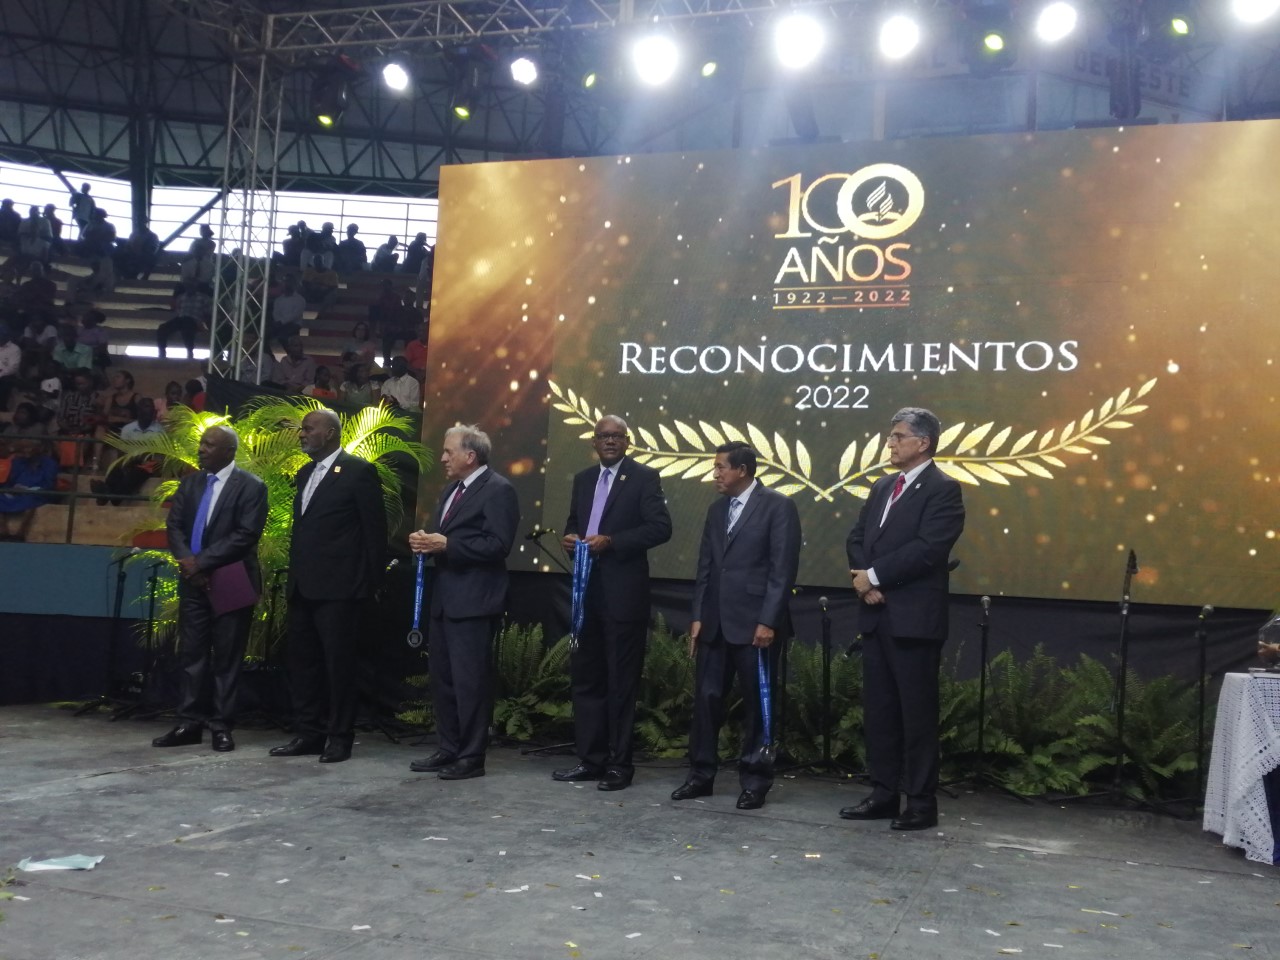 Iglesia Adventista del Séptimo Día reafirma compromiso de servicio al  celebrar sus 100 años como organización en Interaméricana | Al Tanto Digital